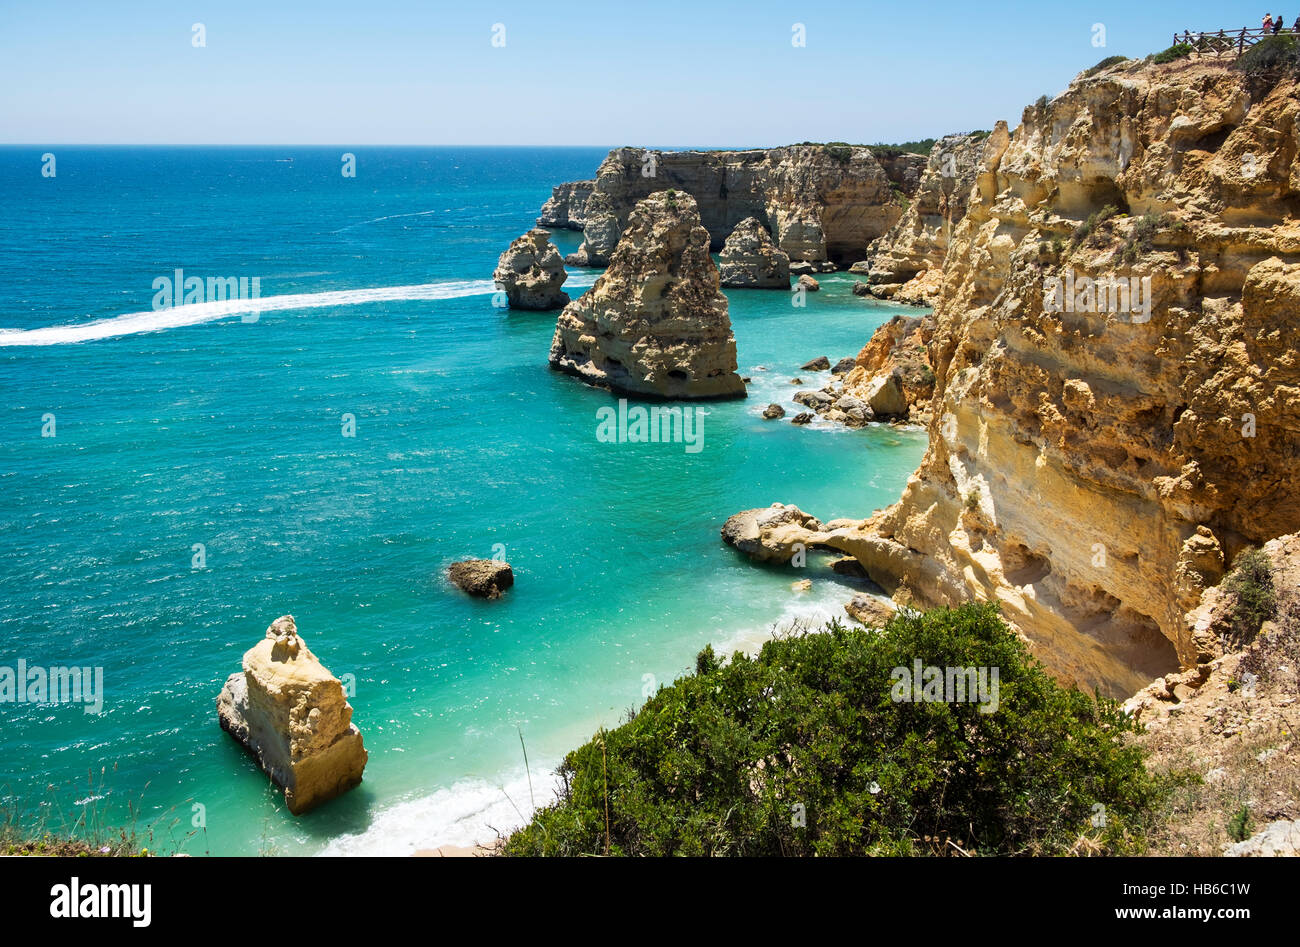 Praia Da Rocha Una Delle Più Belle Spiagge Della Costa Atlantica Linea In Algarve Portogallo